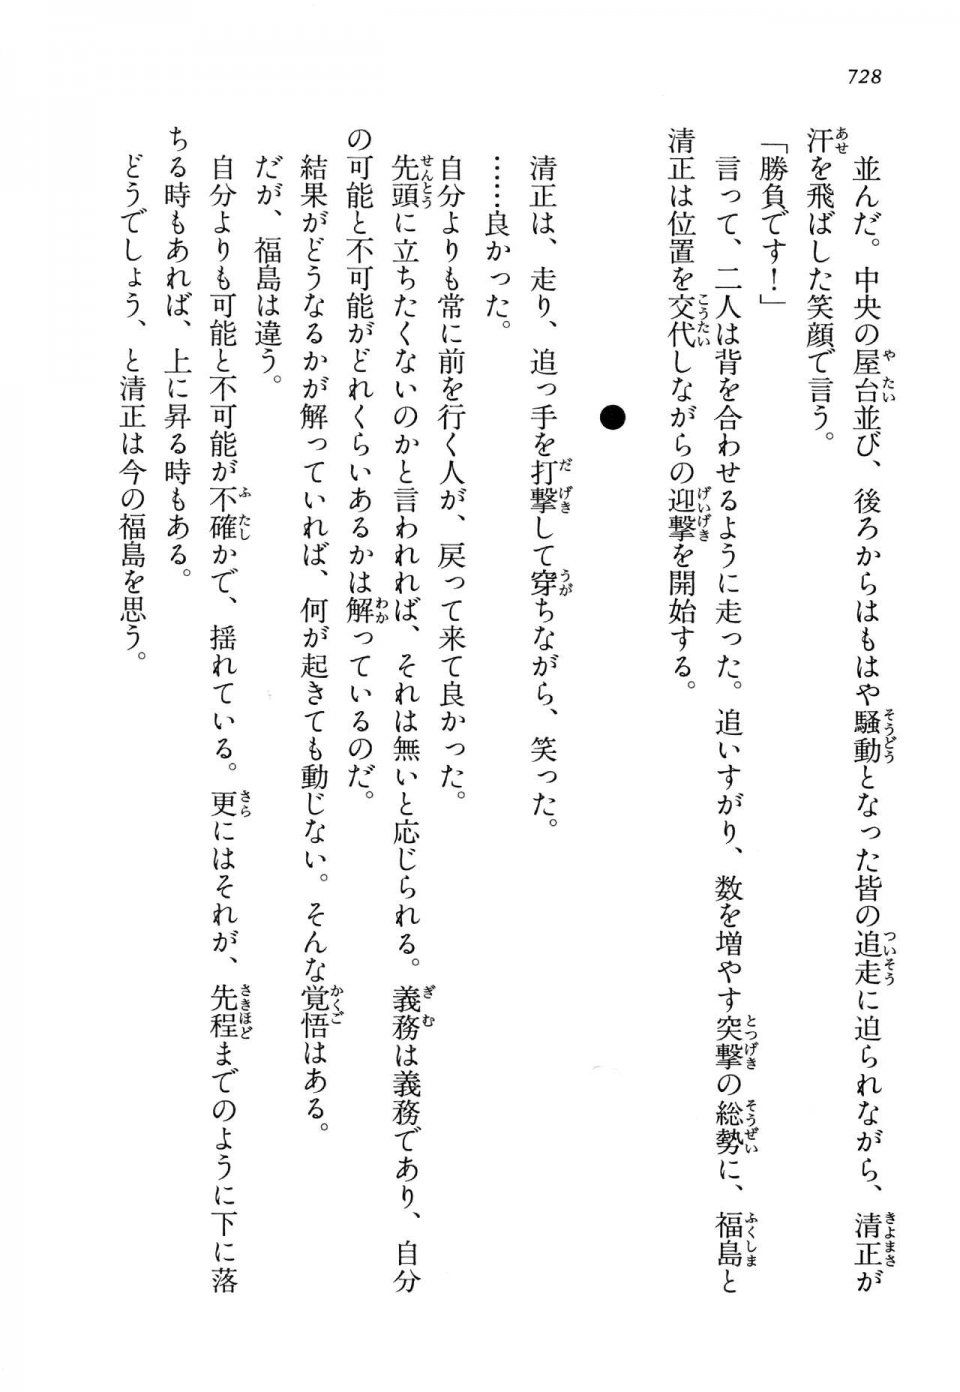 Kyoukai Senjou no Horizon LN Vol 14(6B) - Photo #728